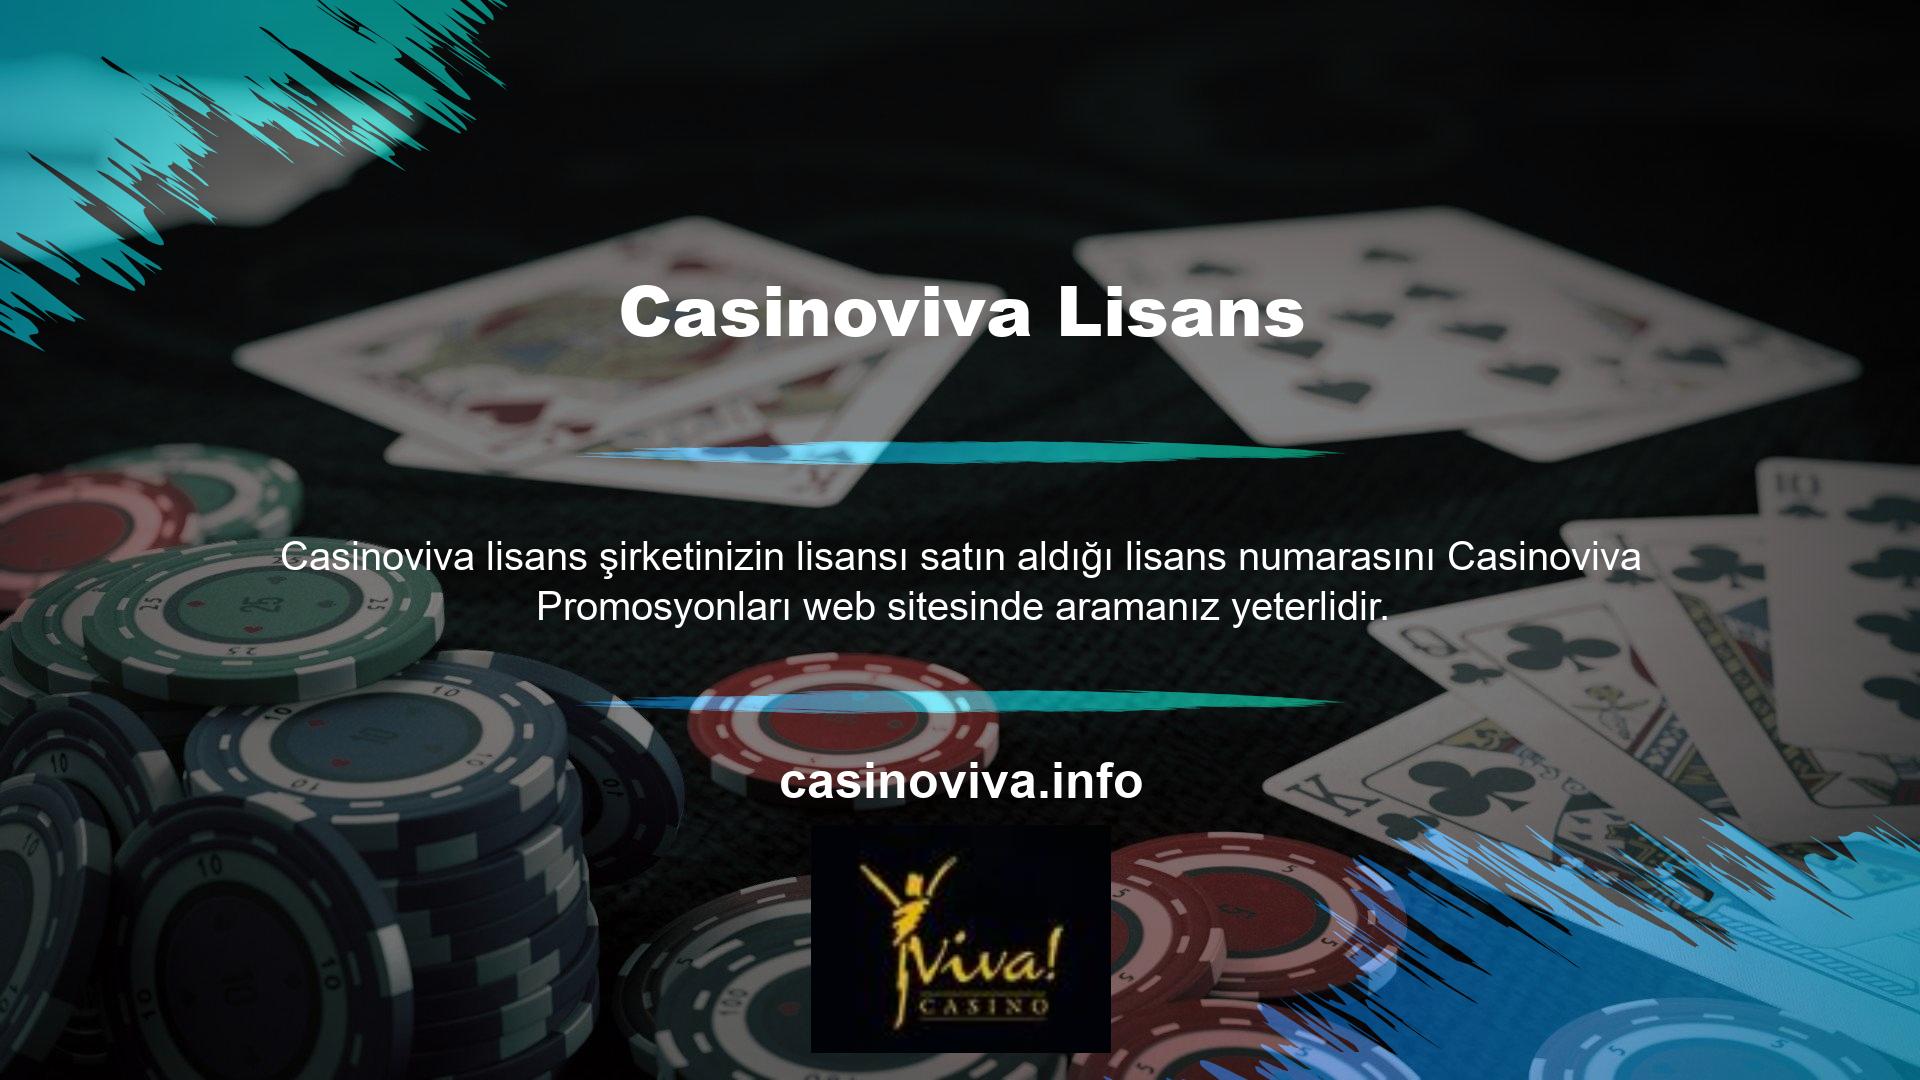 Ayrıca Casinoviva kendi altyapısı üzerinden müşterilerine binlerce oyun seçeneği sunarak kazanç elde etmenizi sağlar